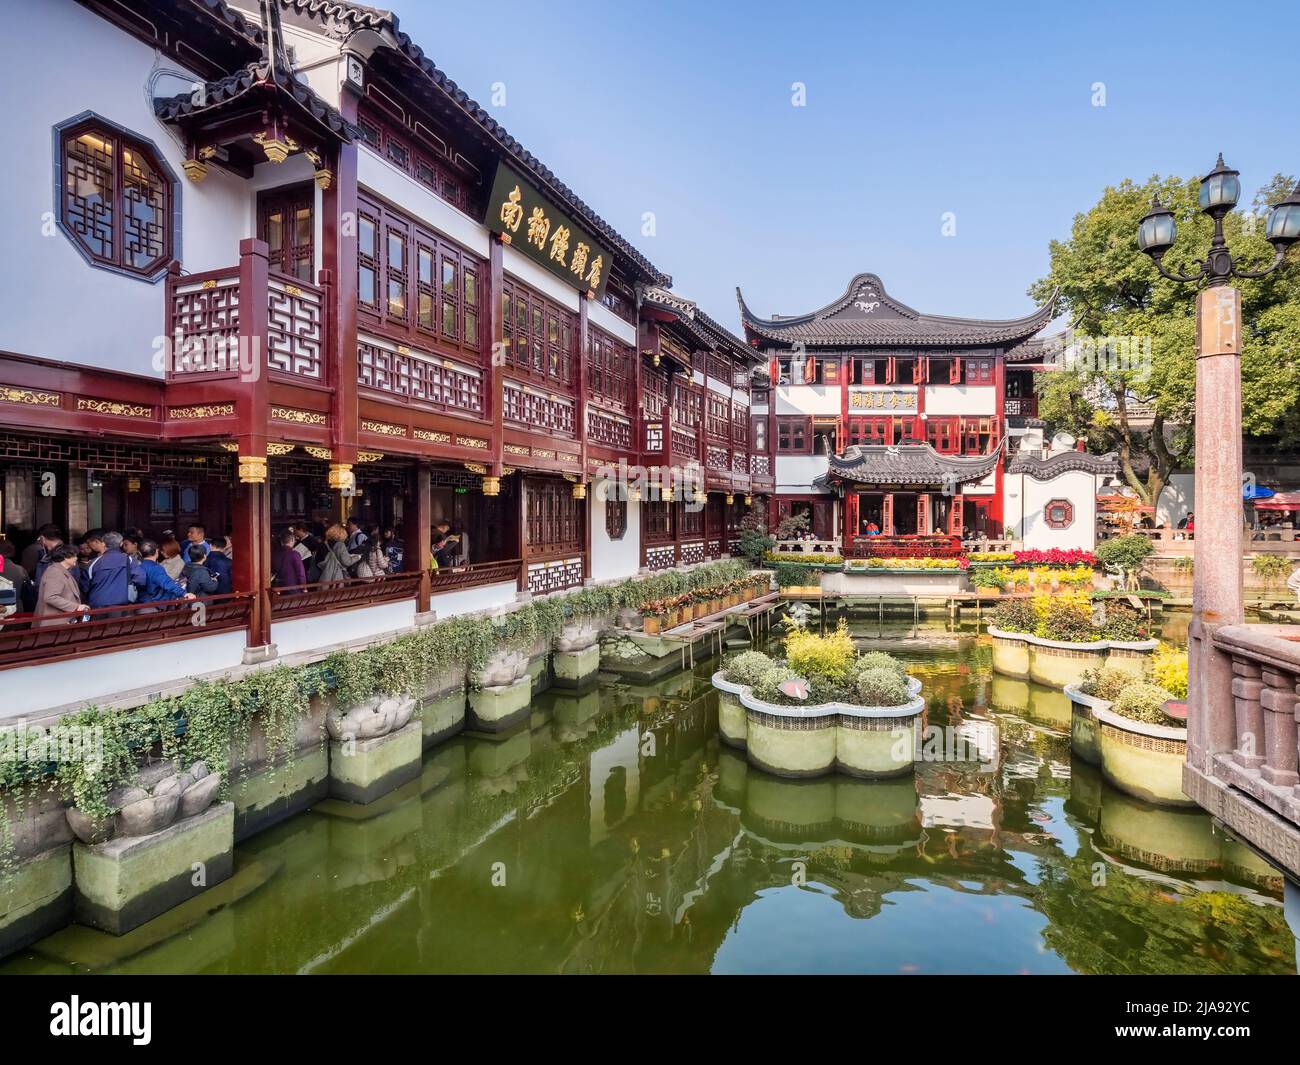 29 novembre 2018: Shanghai, Chine - Lac dans la vieille ville zone commerçante, une attraction touristique majeure. Banque D'Images